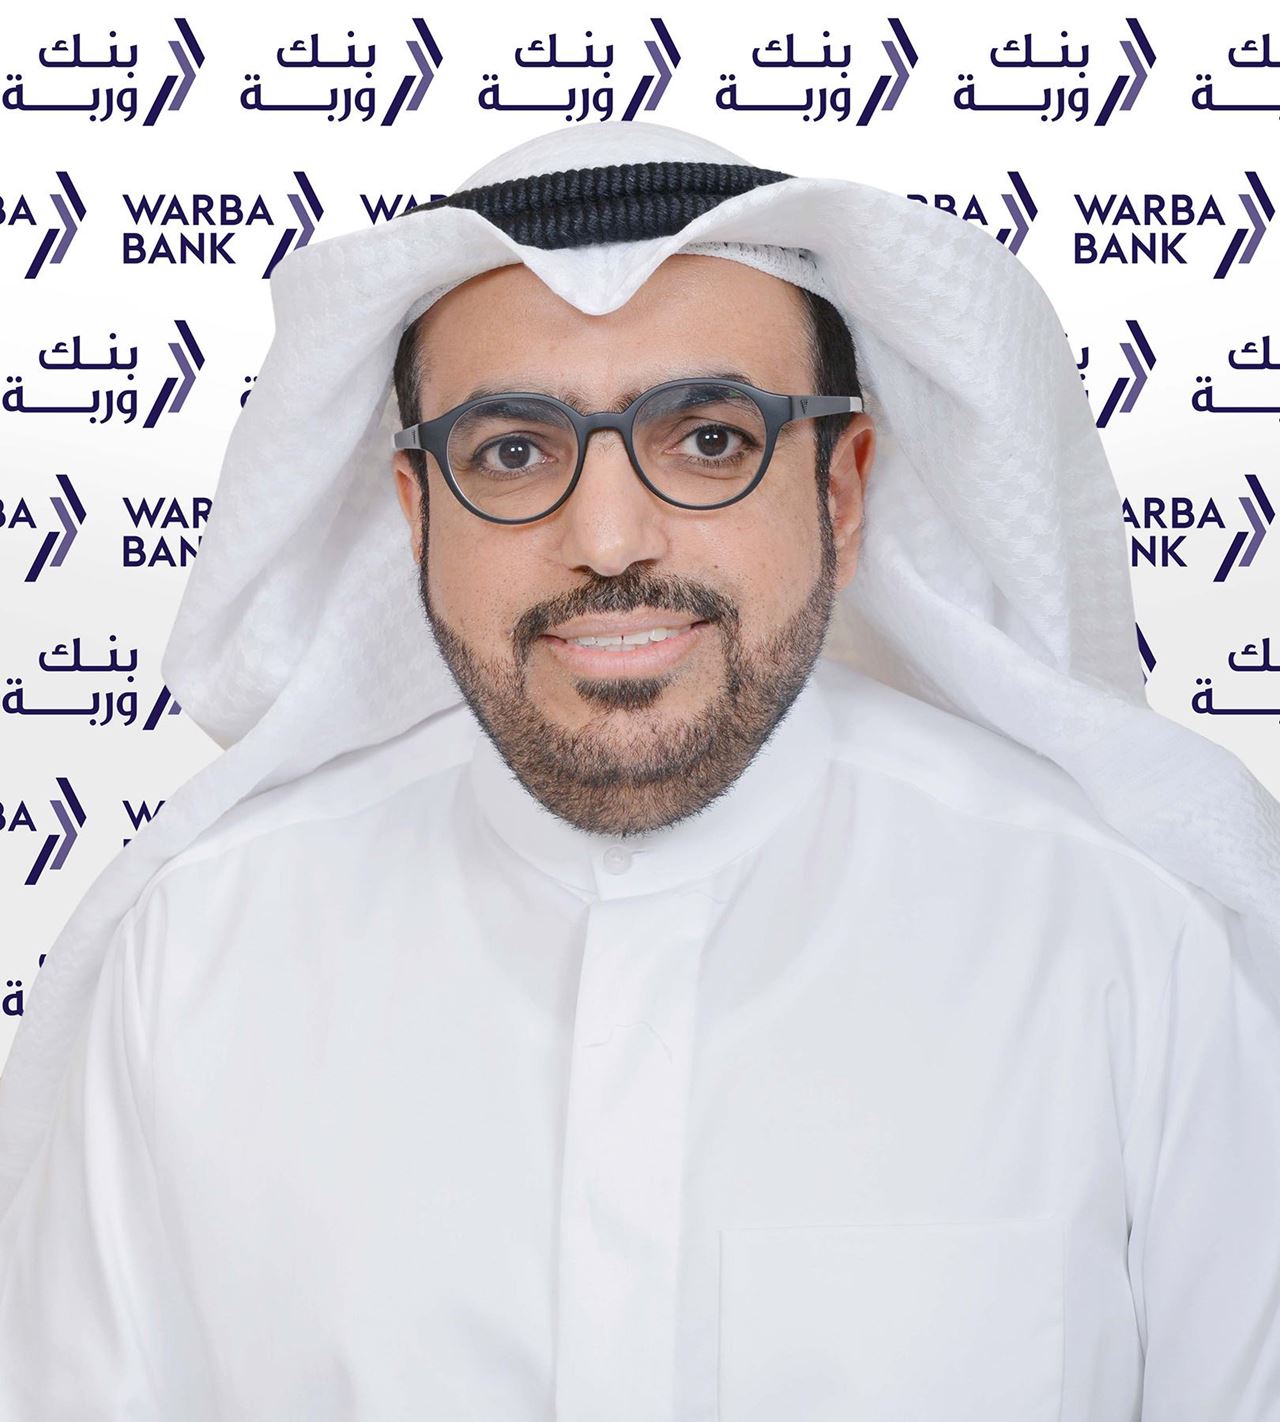 السيد شاهين حمد الغانم – الرئيس التنفيذي في بنك وربة